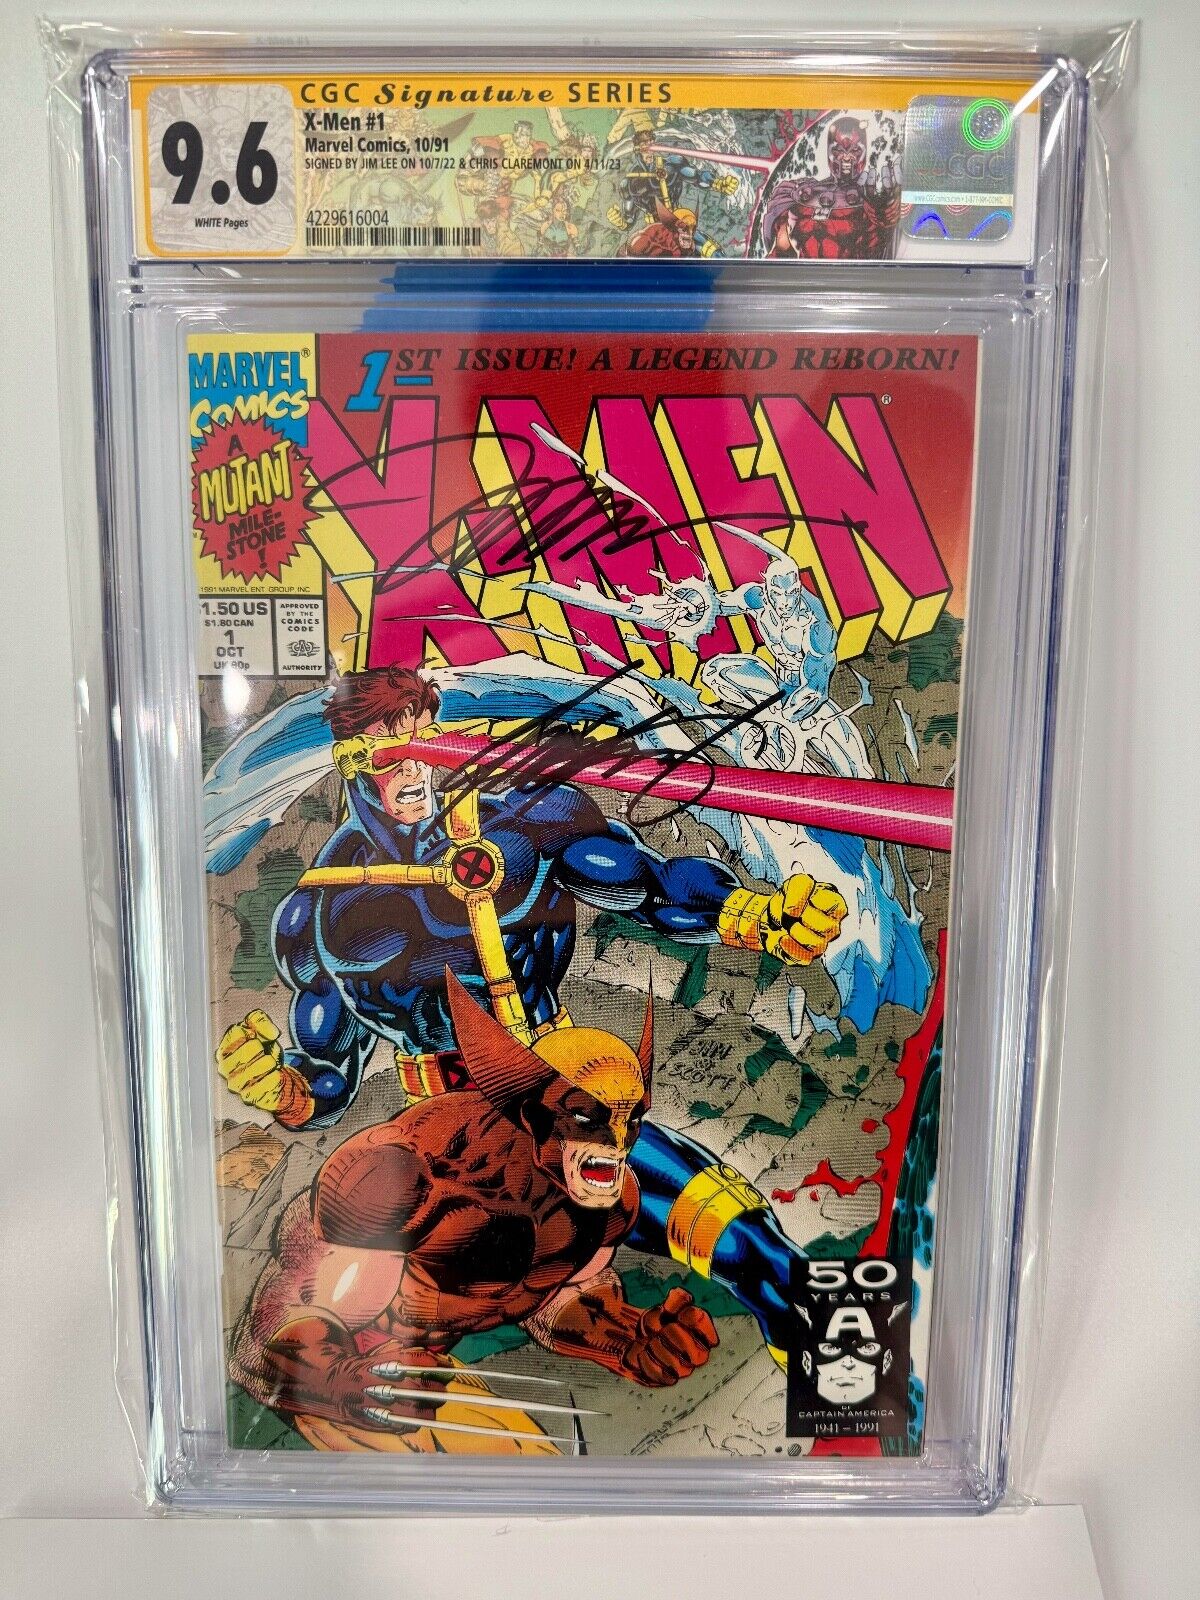 X-Men #1 1991 CGC 9.6 Signed Autograph Jim Lee & Chris Claremont